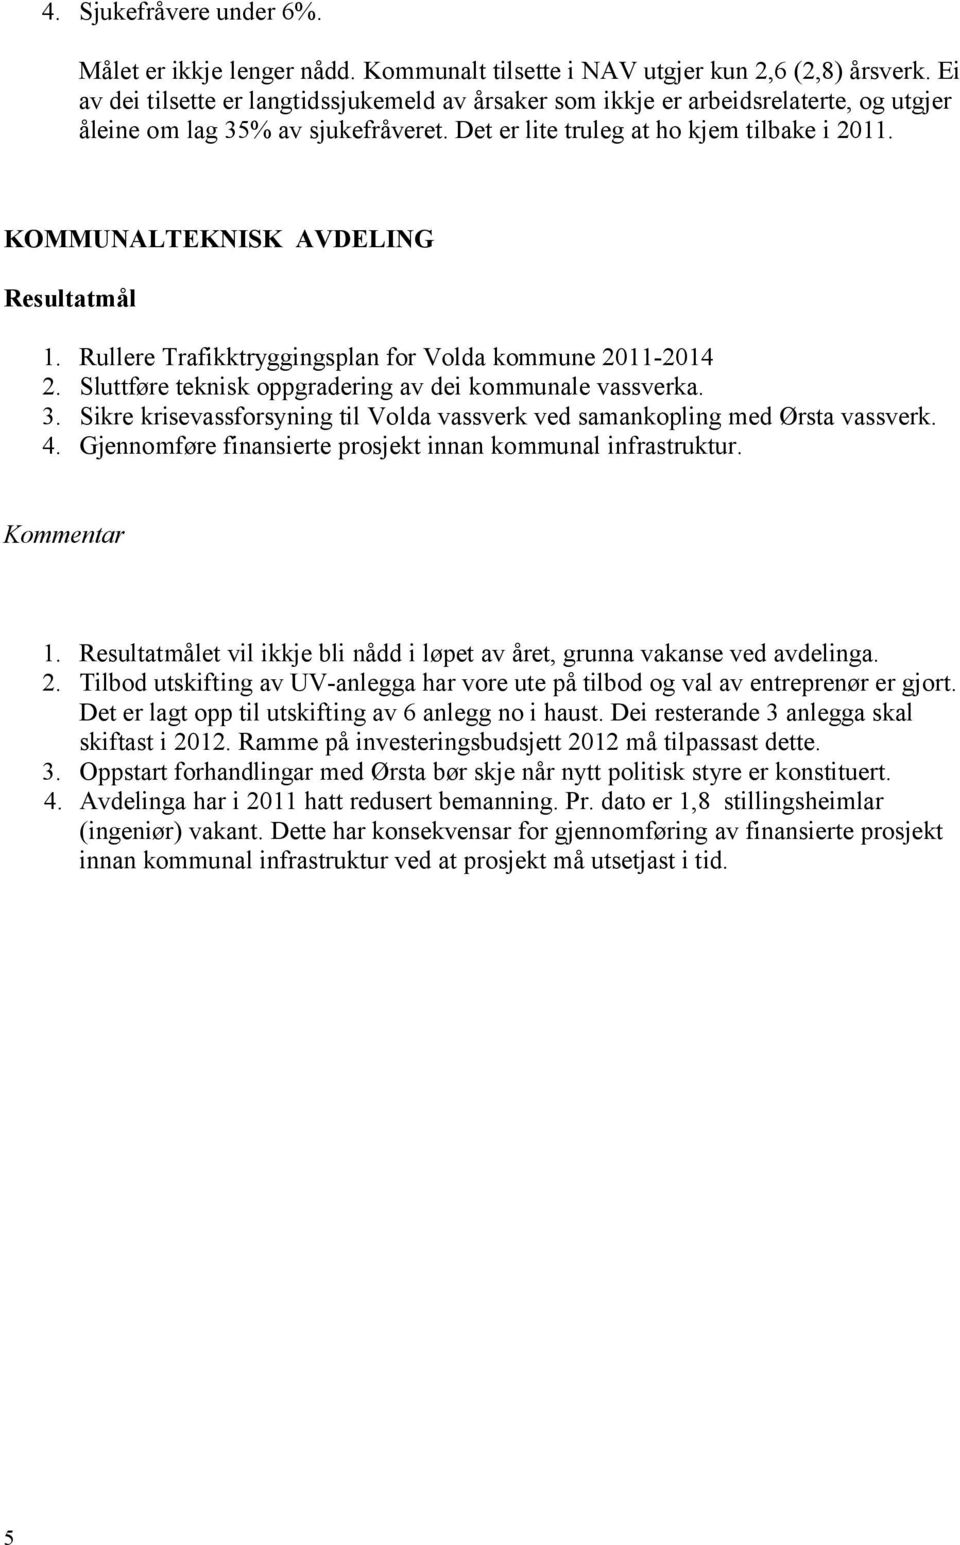 KOMMUNALTEKNISK AVDELING Resultatmål 1. Rullere Trafikktryggingsplan for Volda kommune 2011-2014 2. Sluttføre teknisk oppgradering av dei kommunale vassverka. 3.